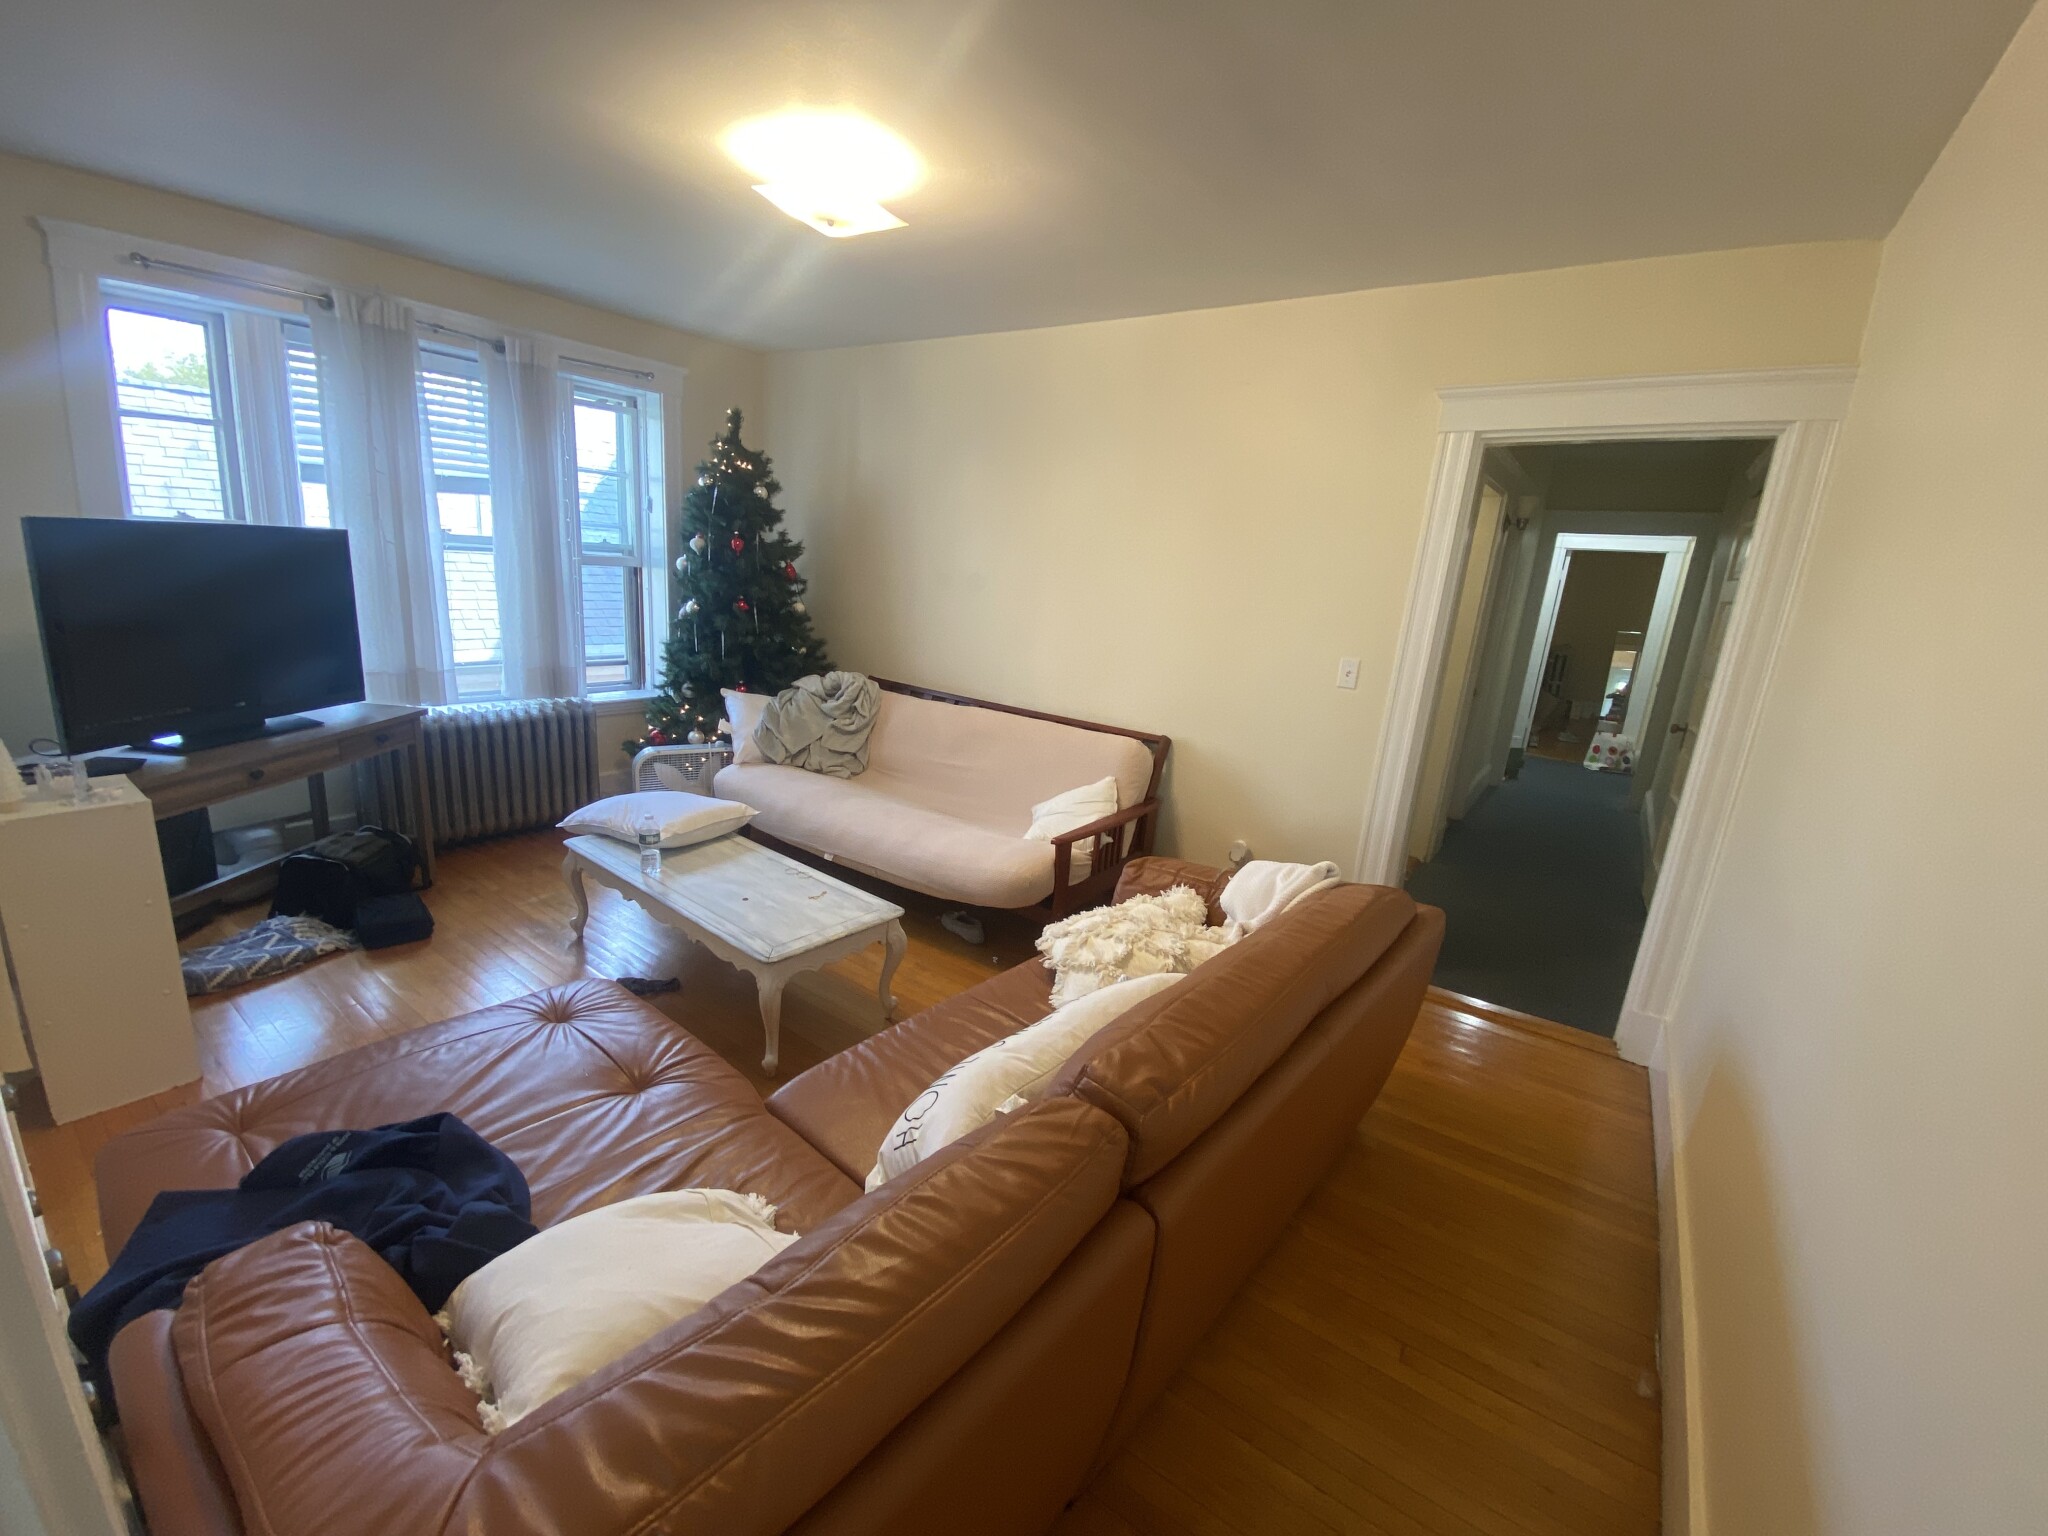 Photos of apartment on Fairfield St.,Cambridge MA 02140